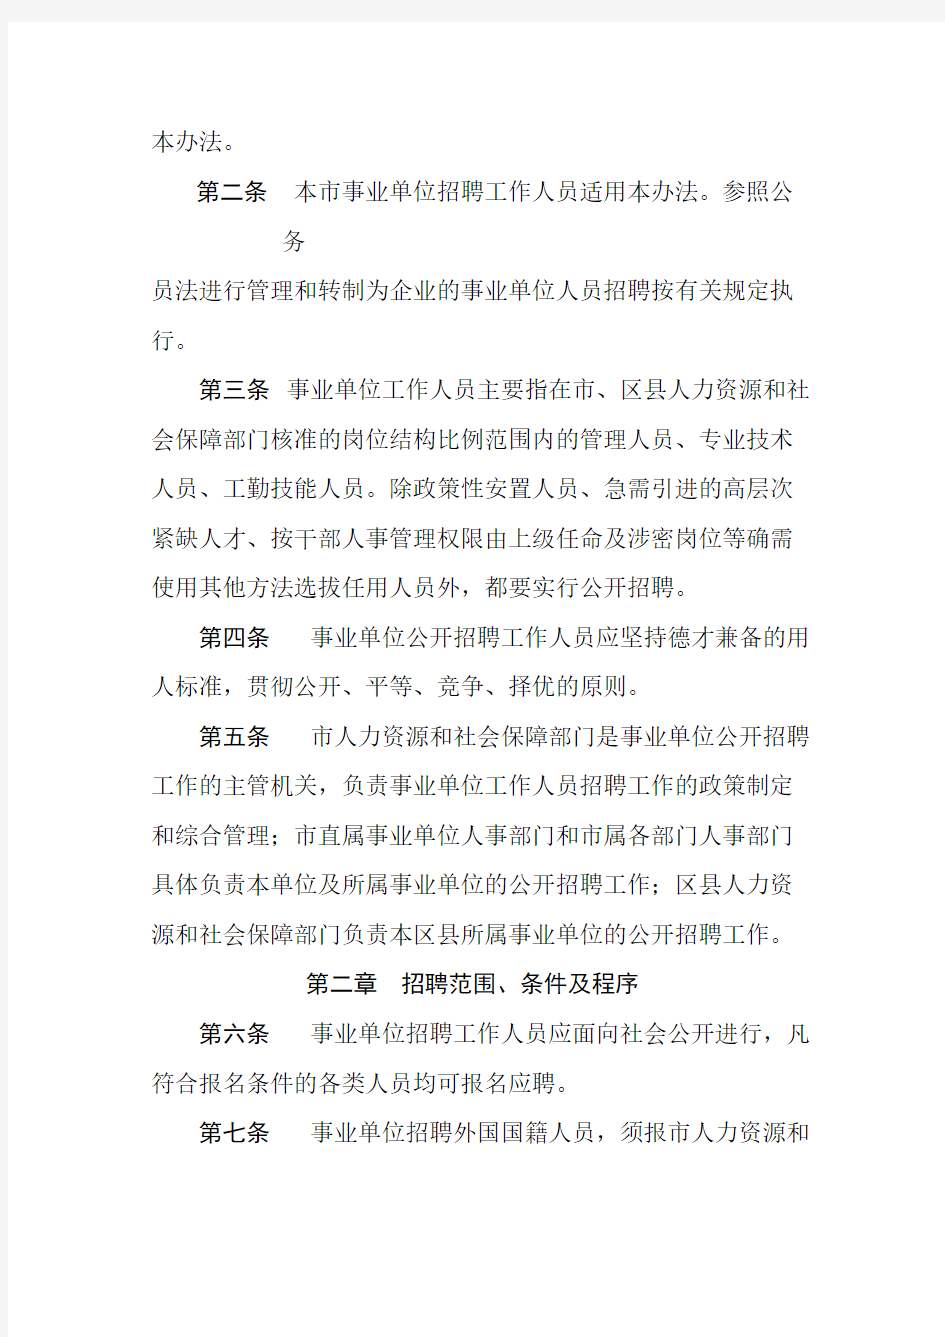 【免费下载】北京市事业单位公开招聘工作人员实施办法 京人社专技发102号